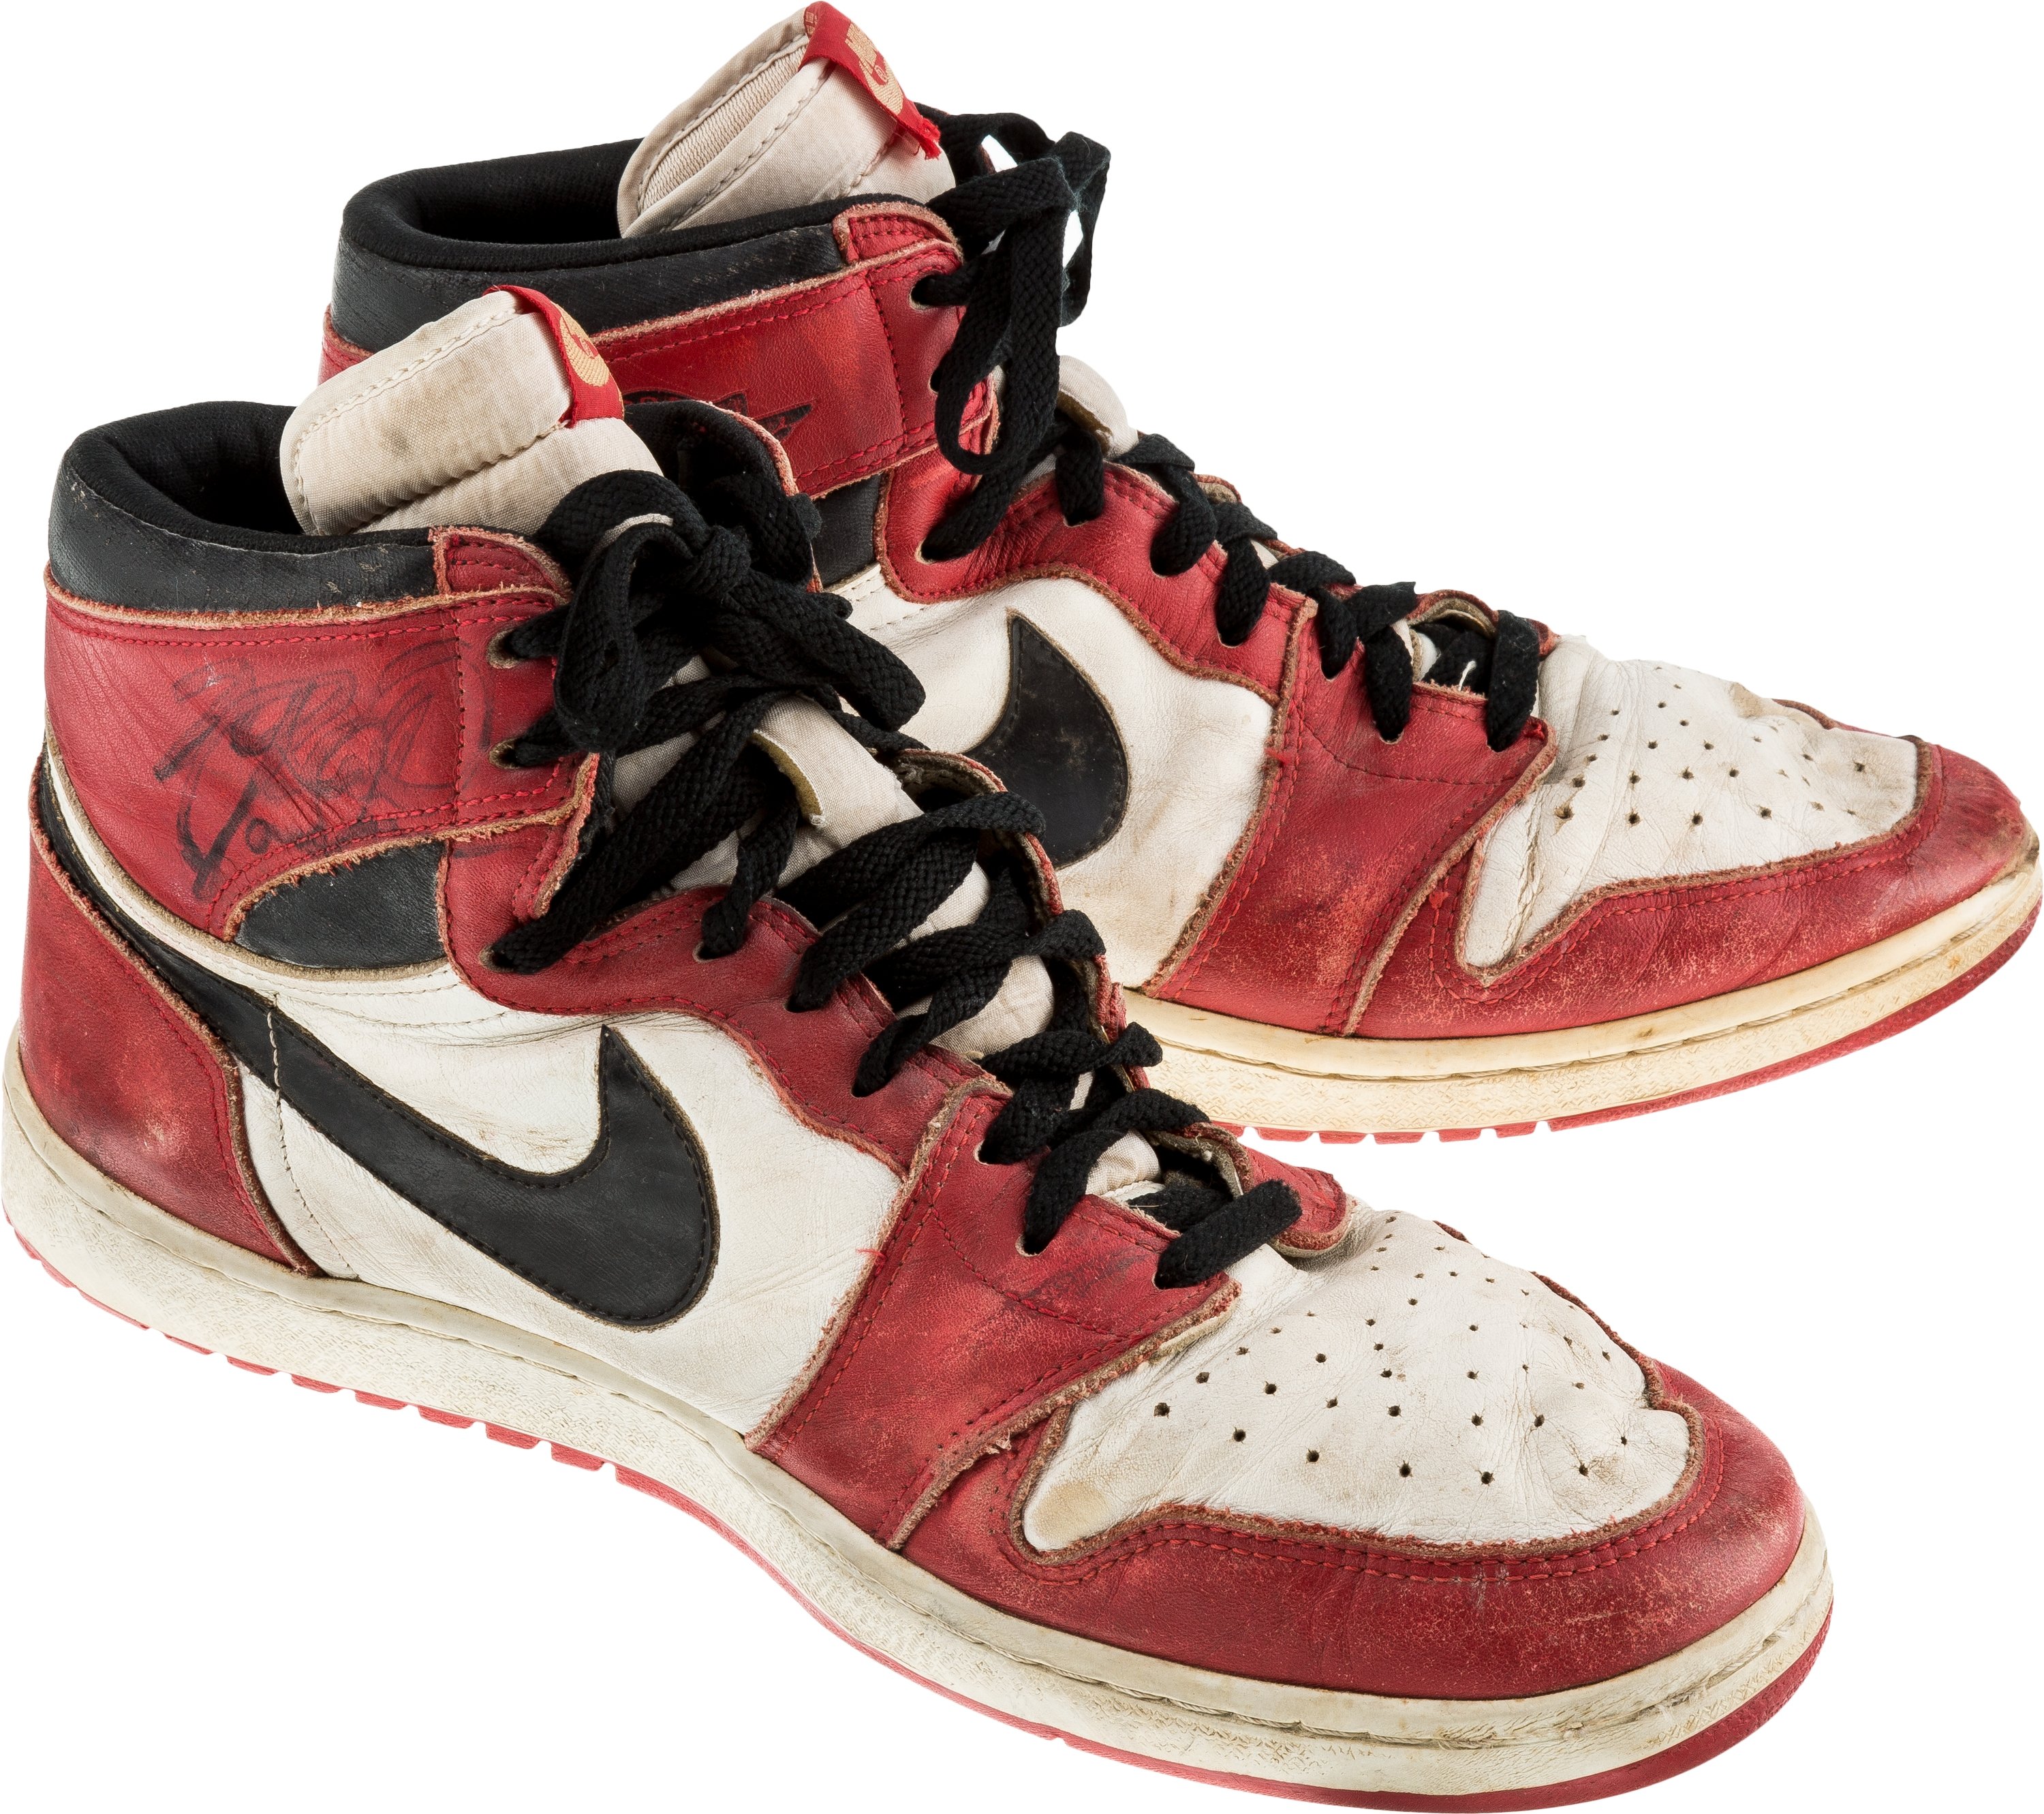 original air jordan shoes